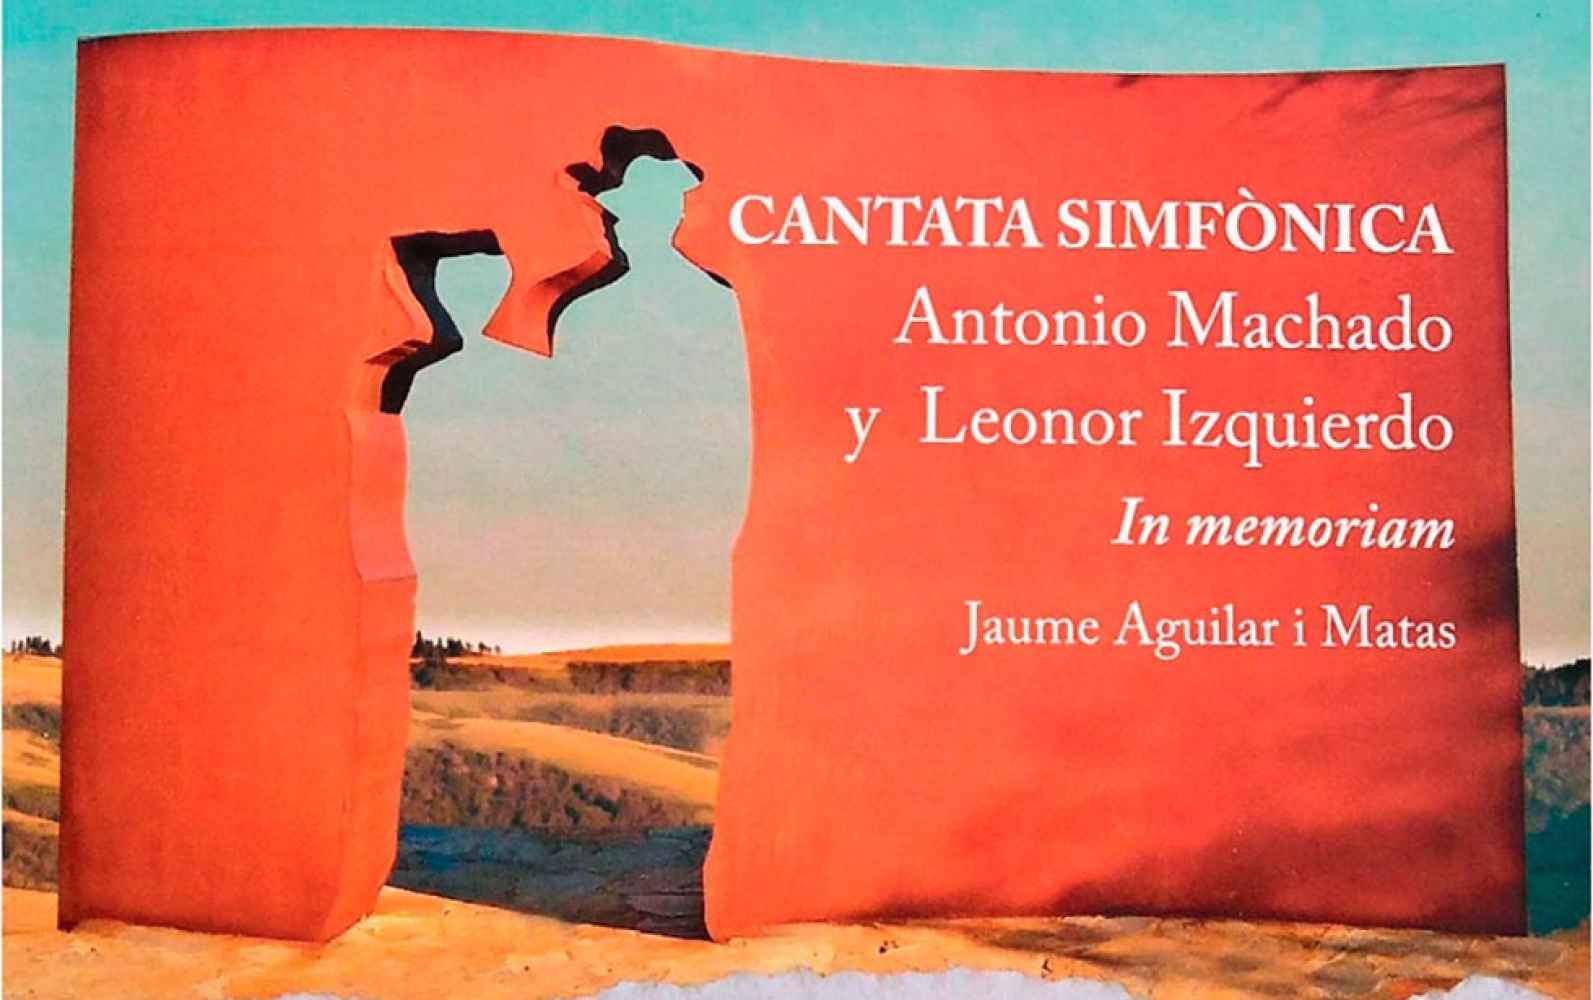 Estreno de Cantata Antonio Machado y Leonor Izquierdo